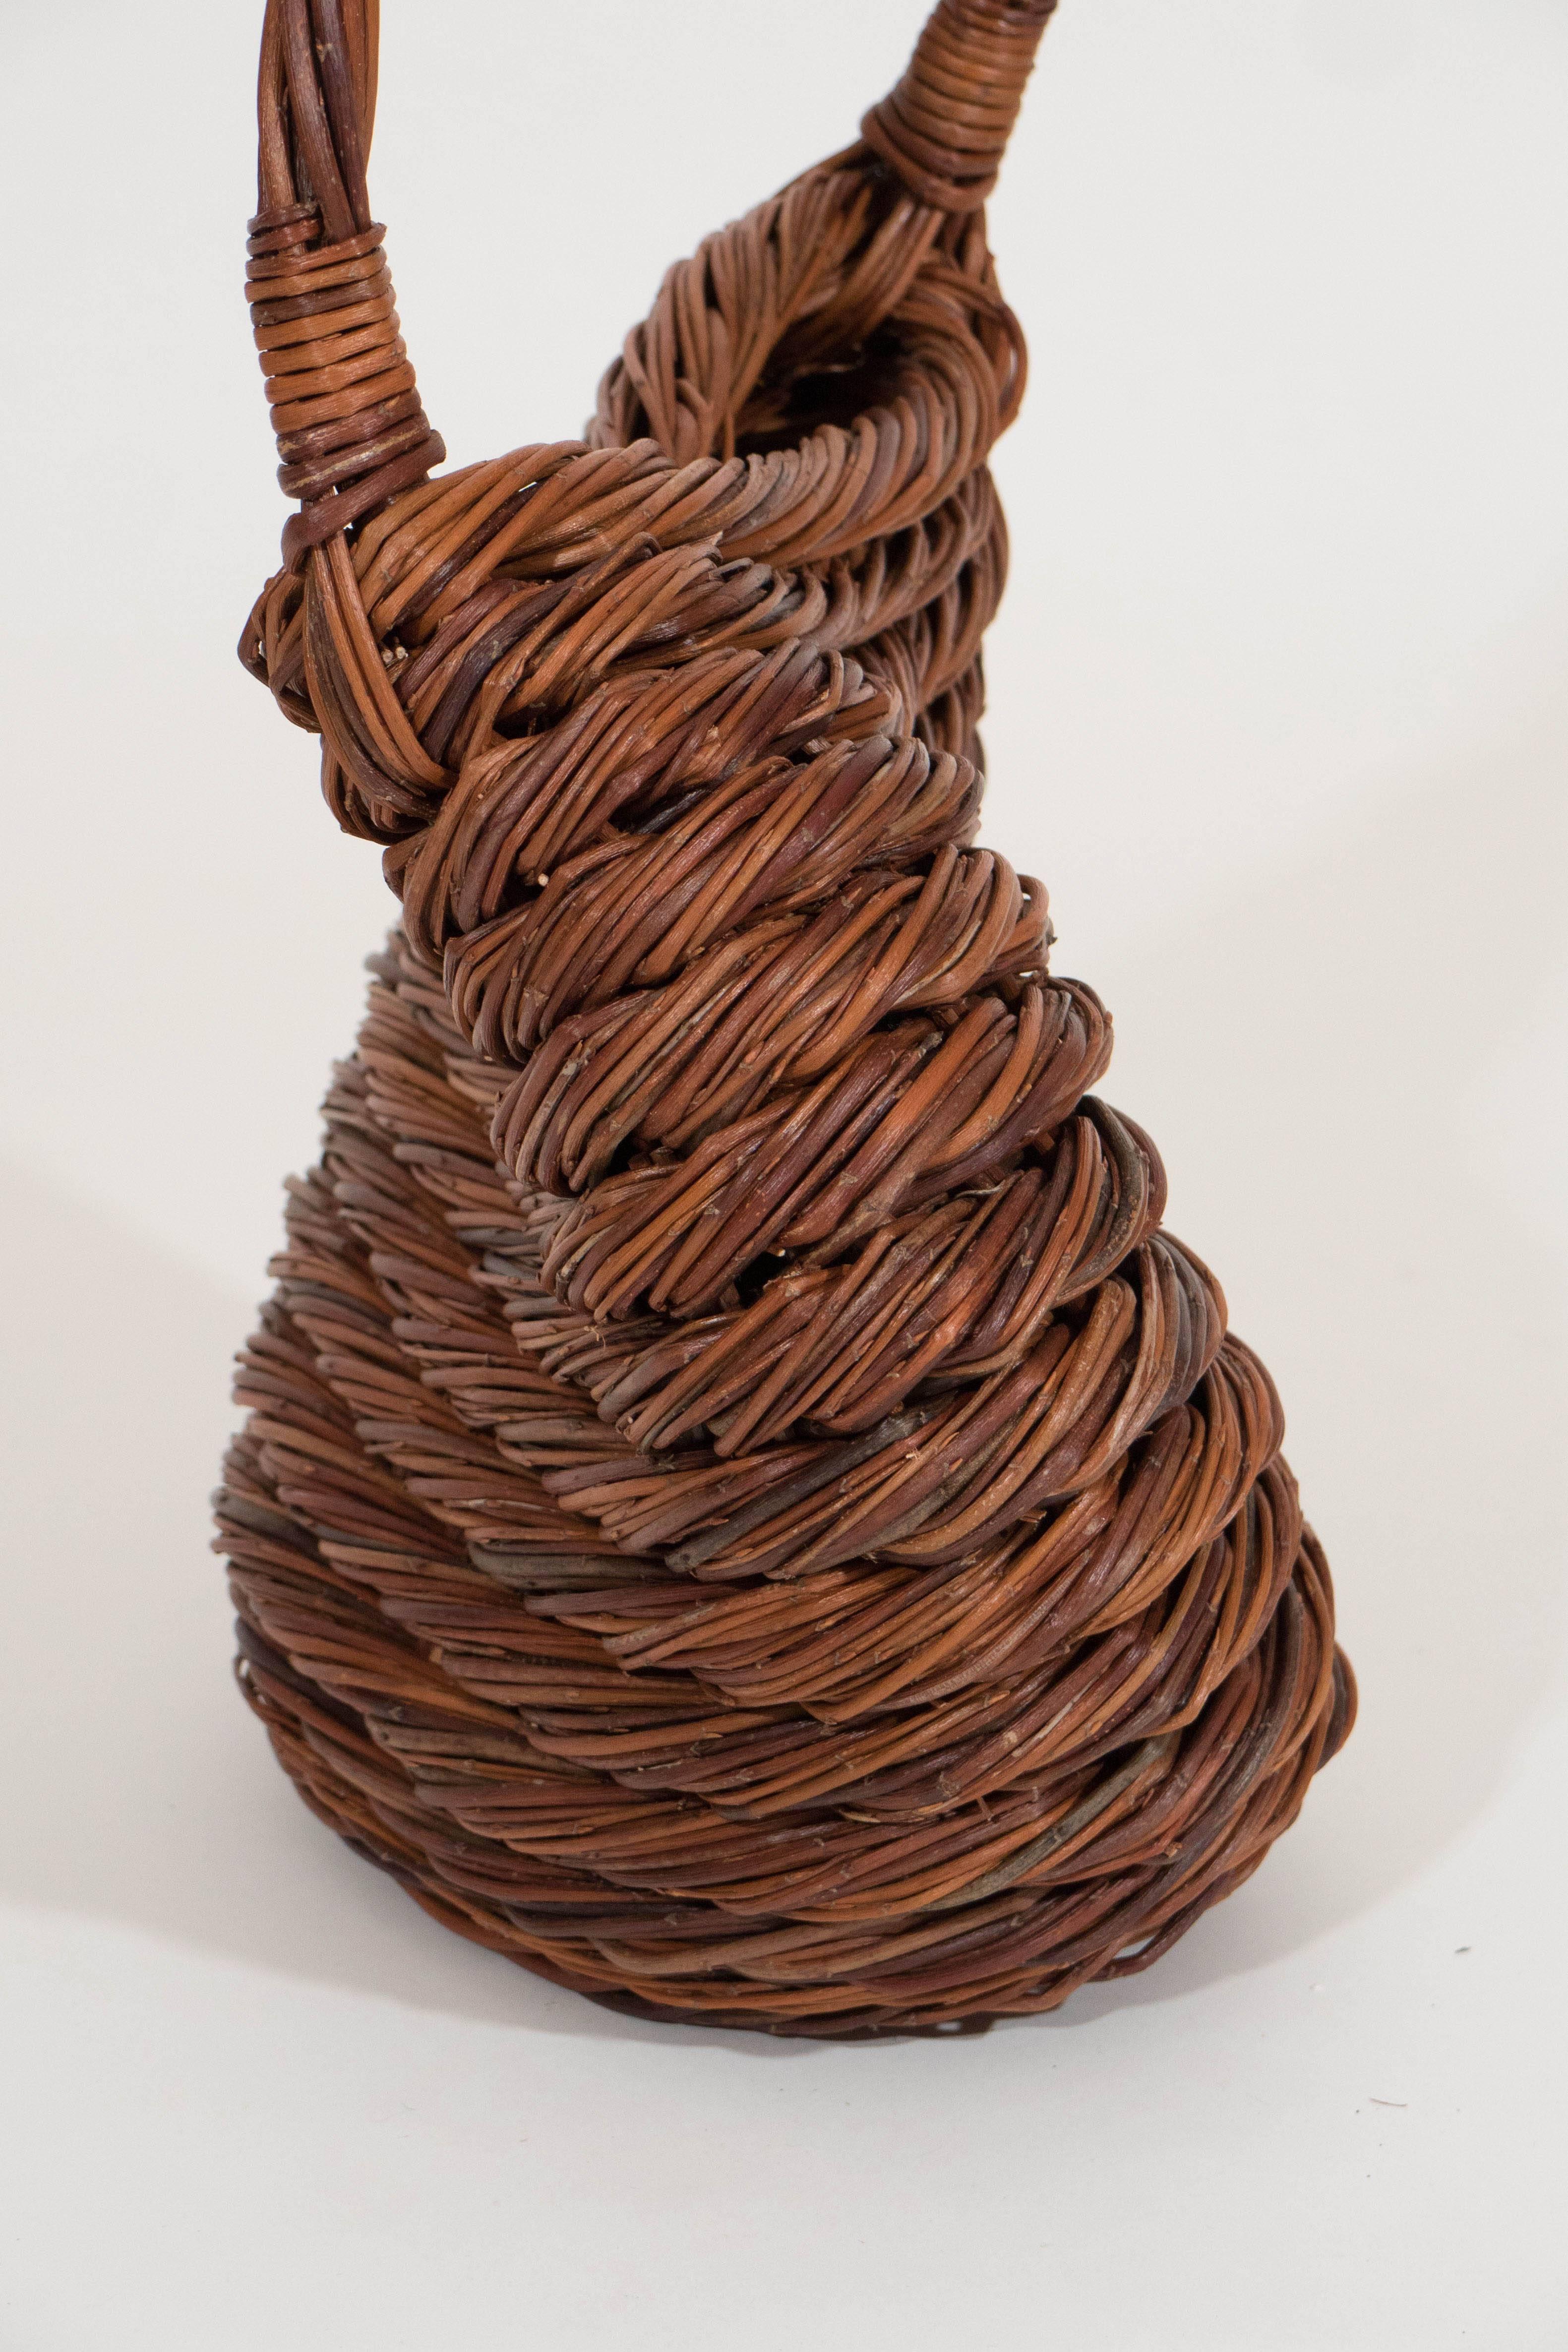 Wicker Rolling Basket by Klaus Titze, Denmark